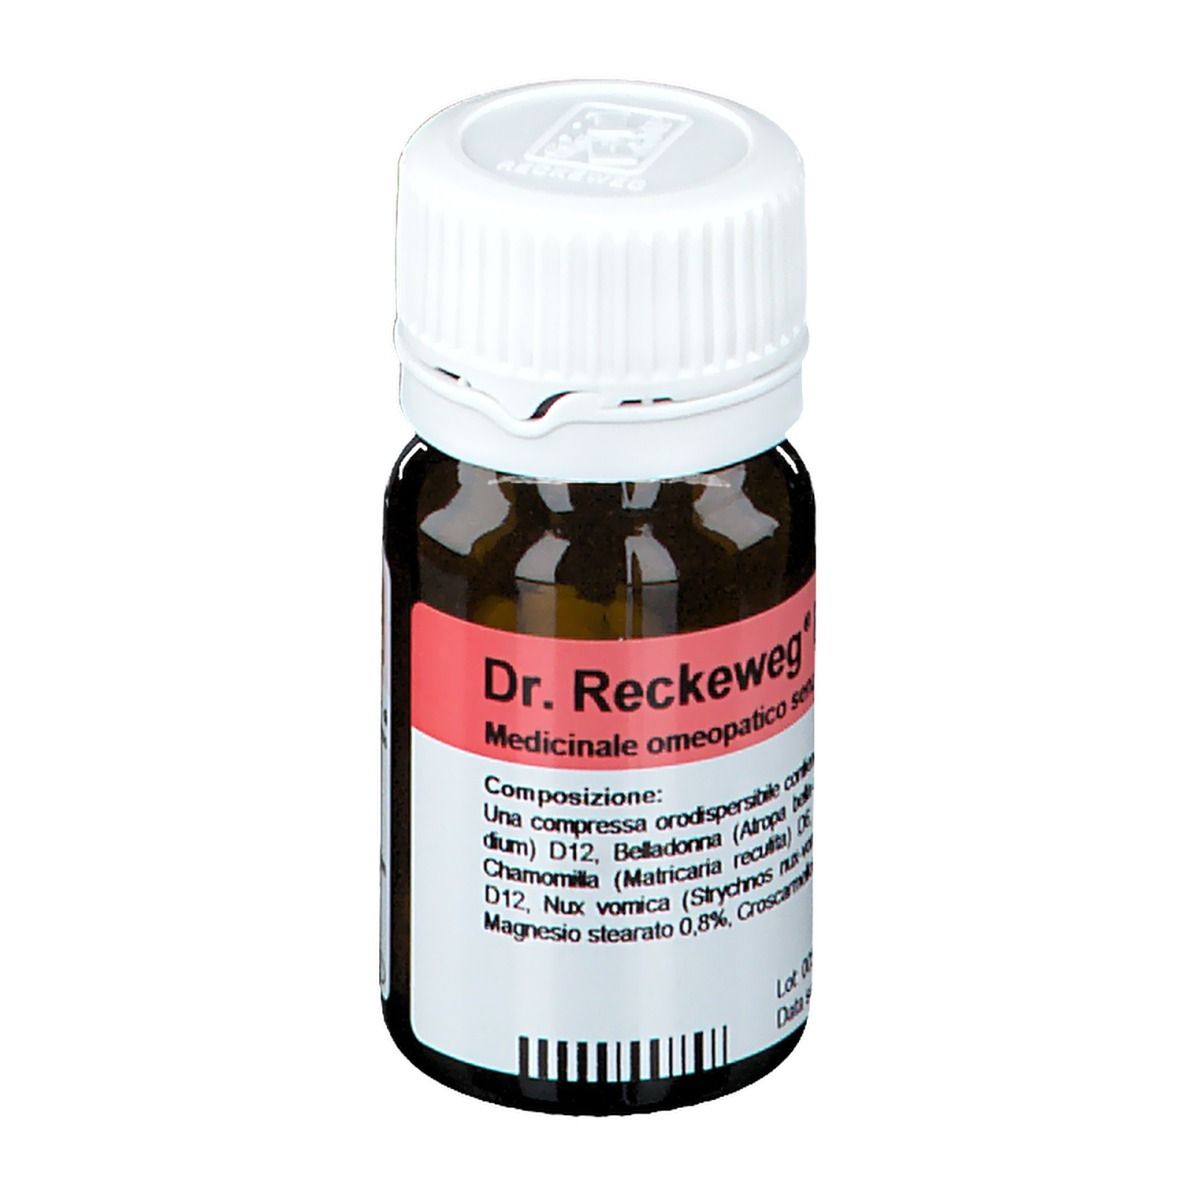 Dr. Reckeweg R 5 Compresse